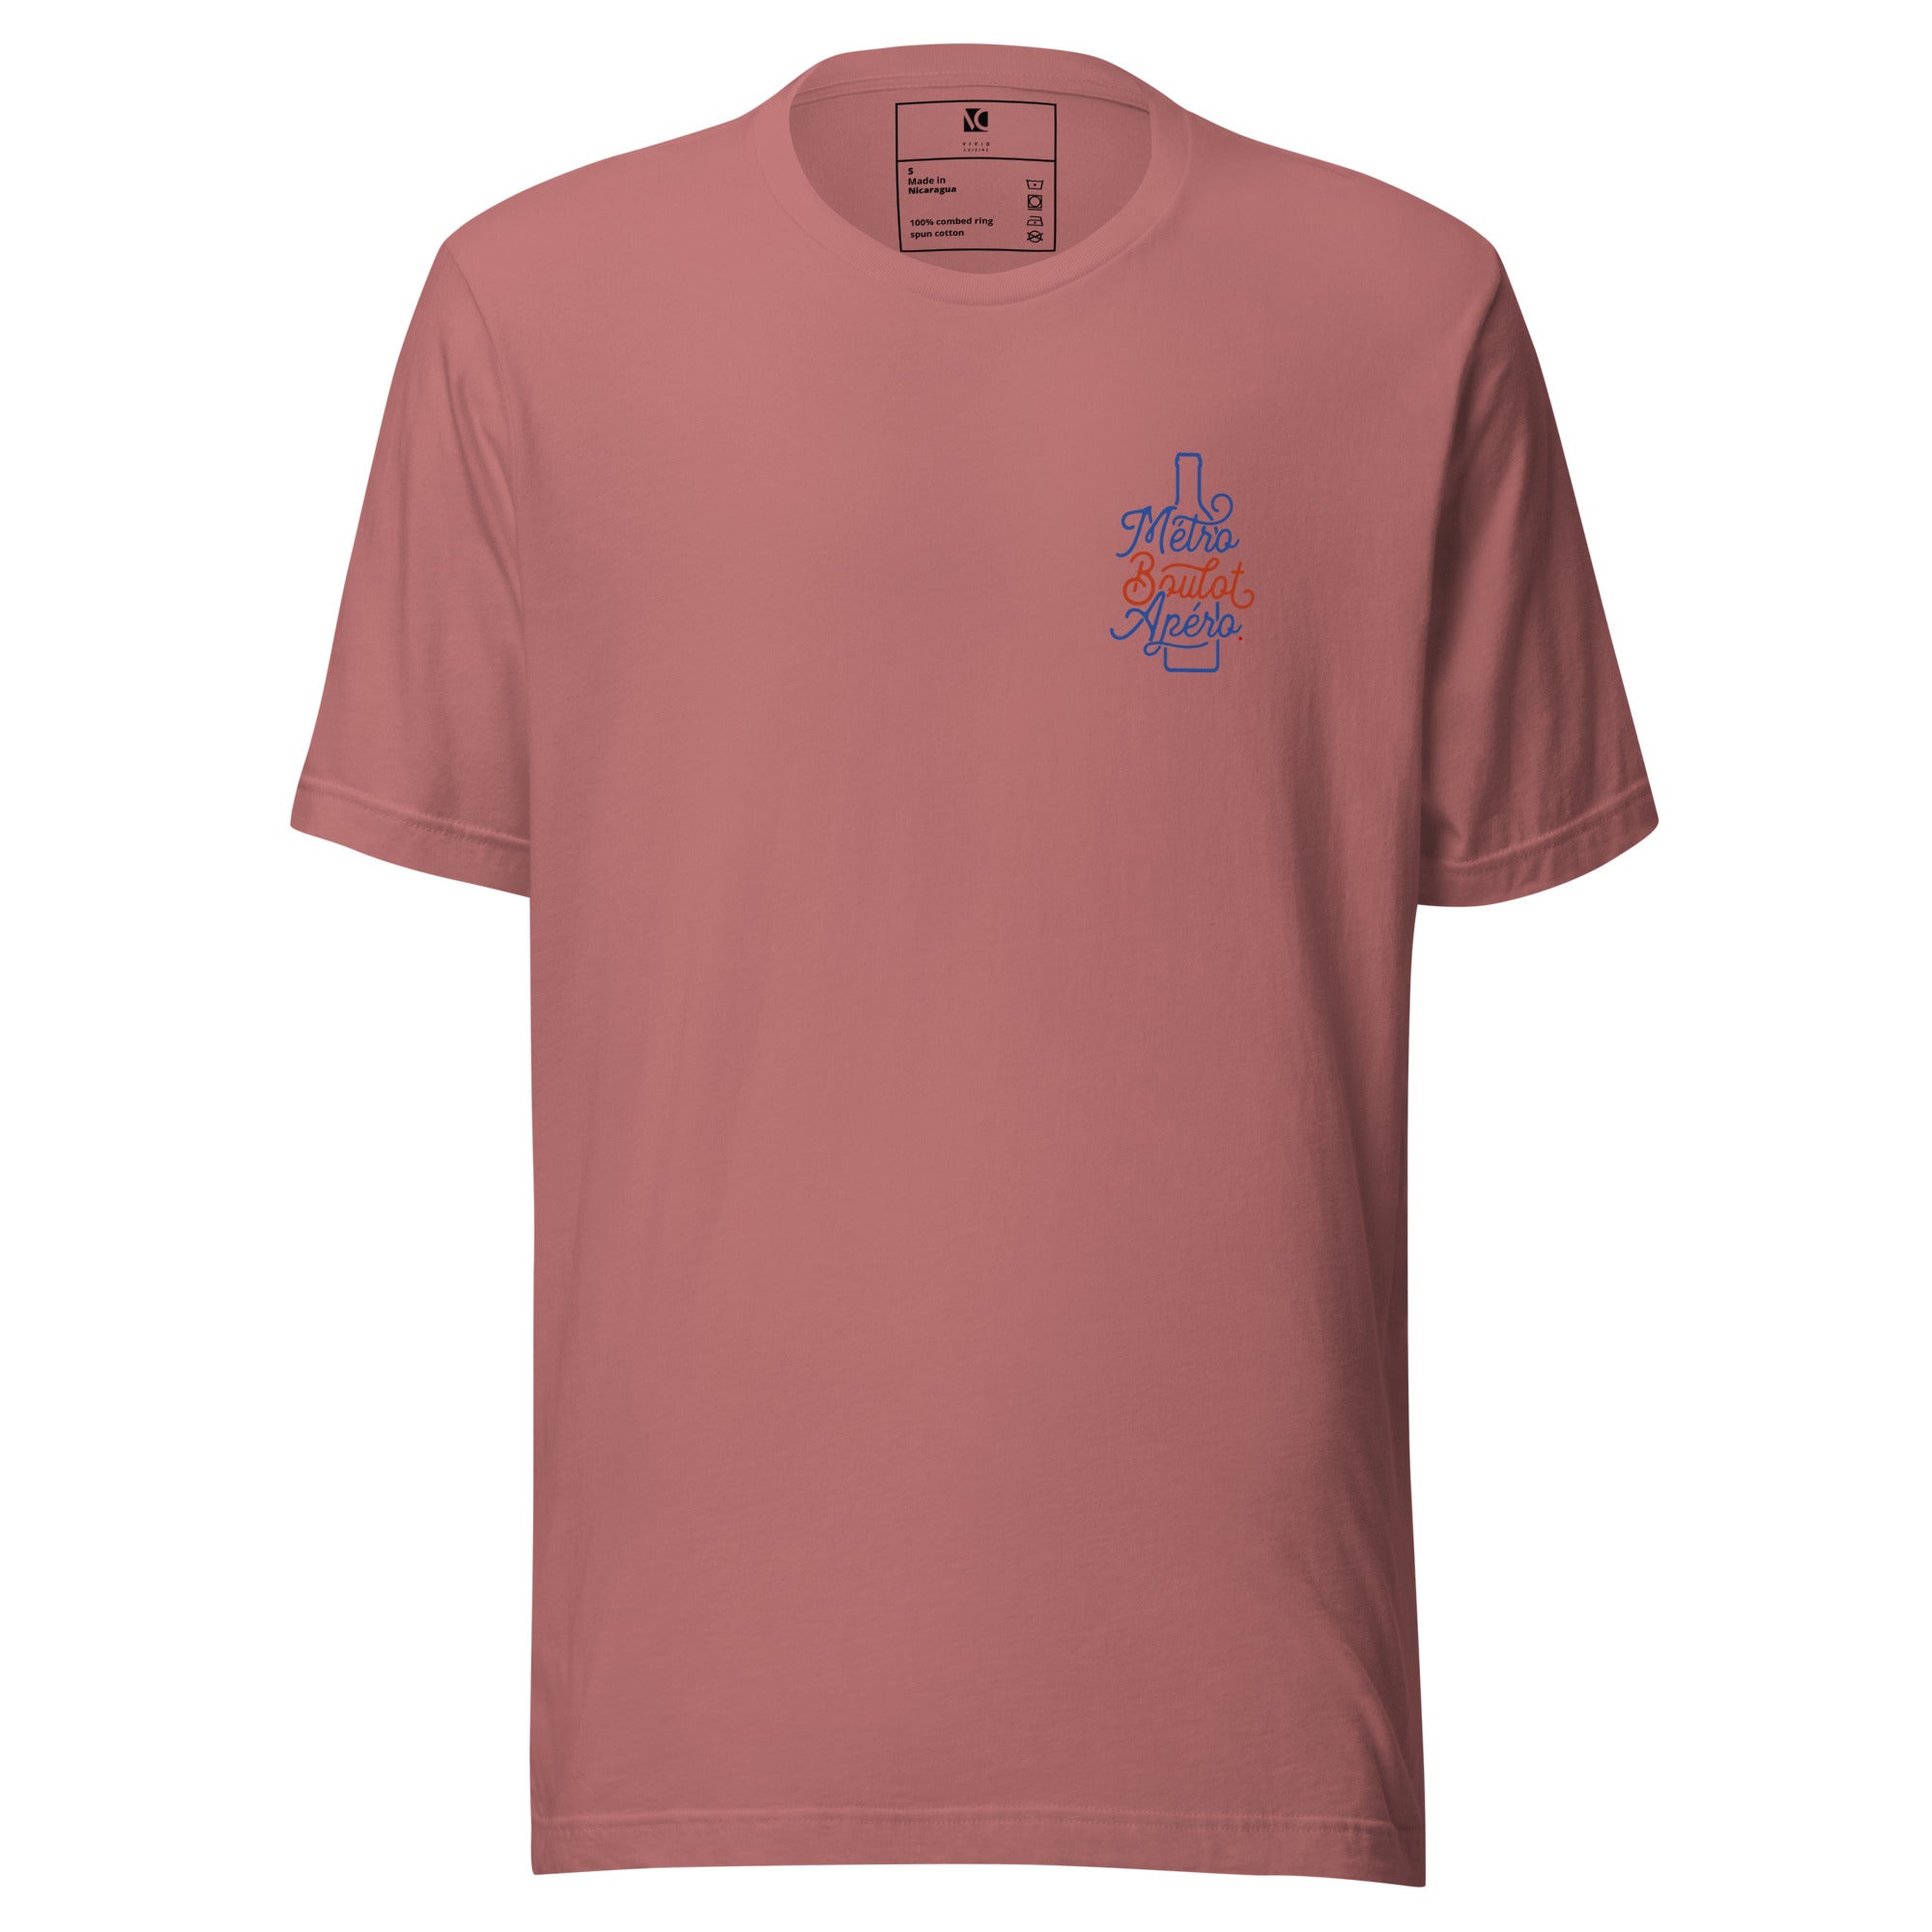 Métro, Boulot, Apéro (S) - Unisex T-Shirt